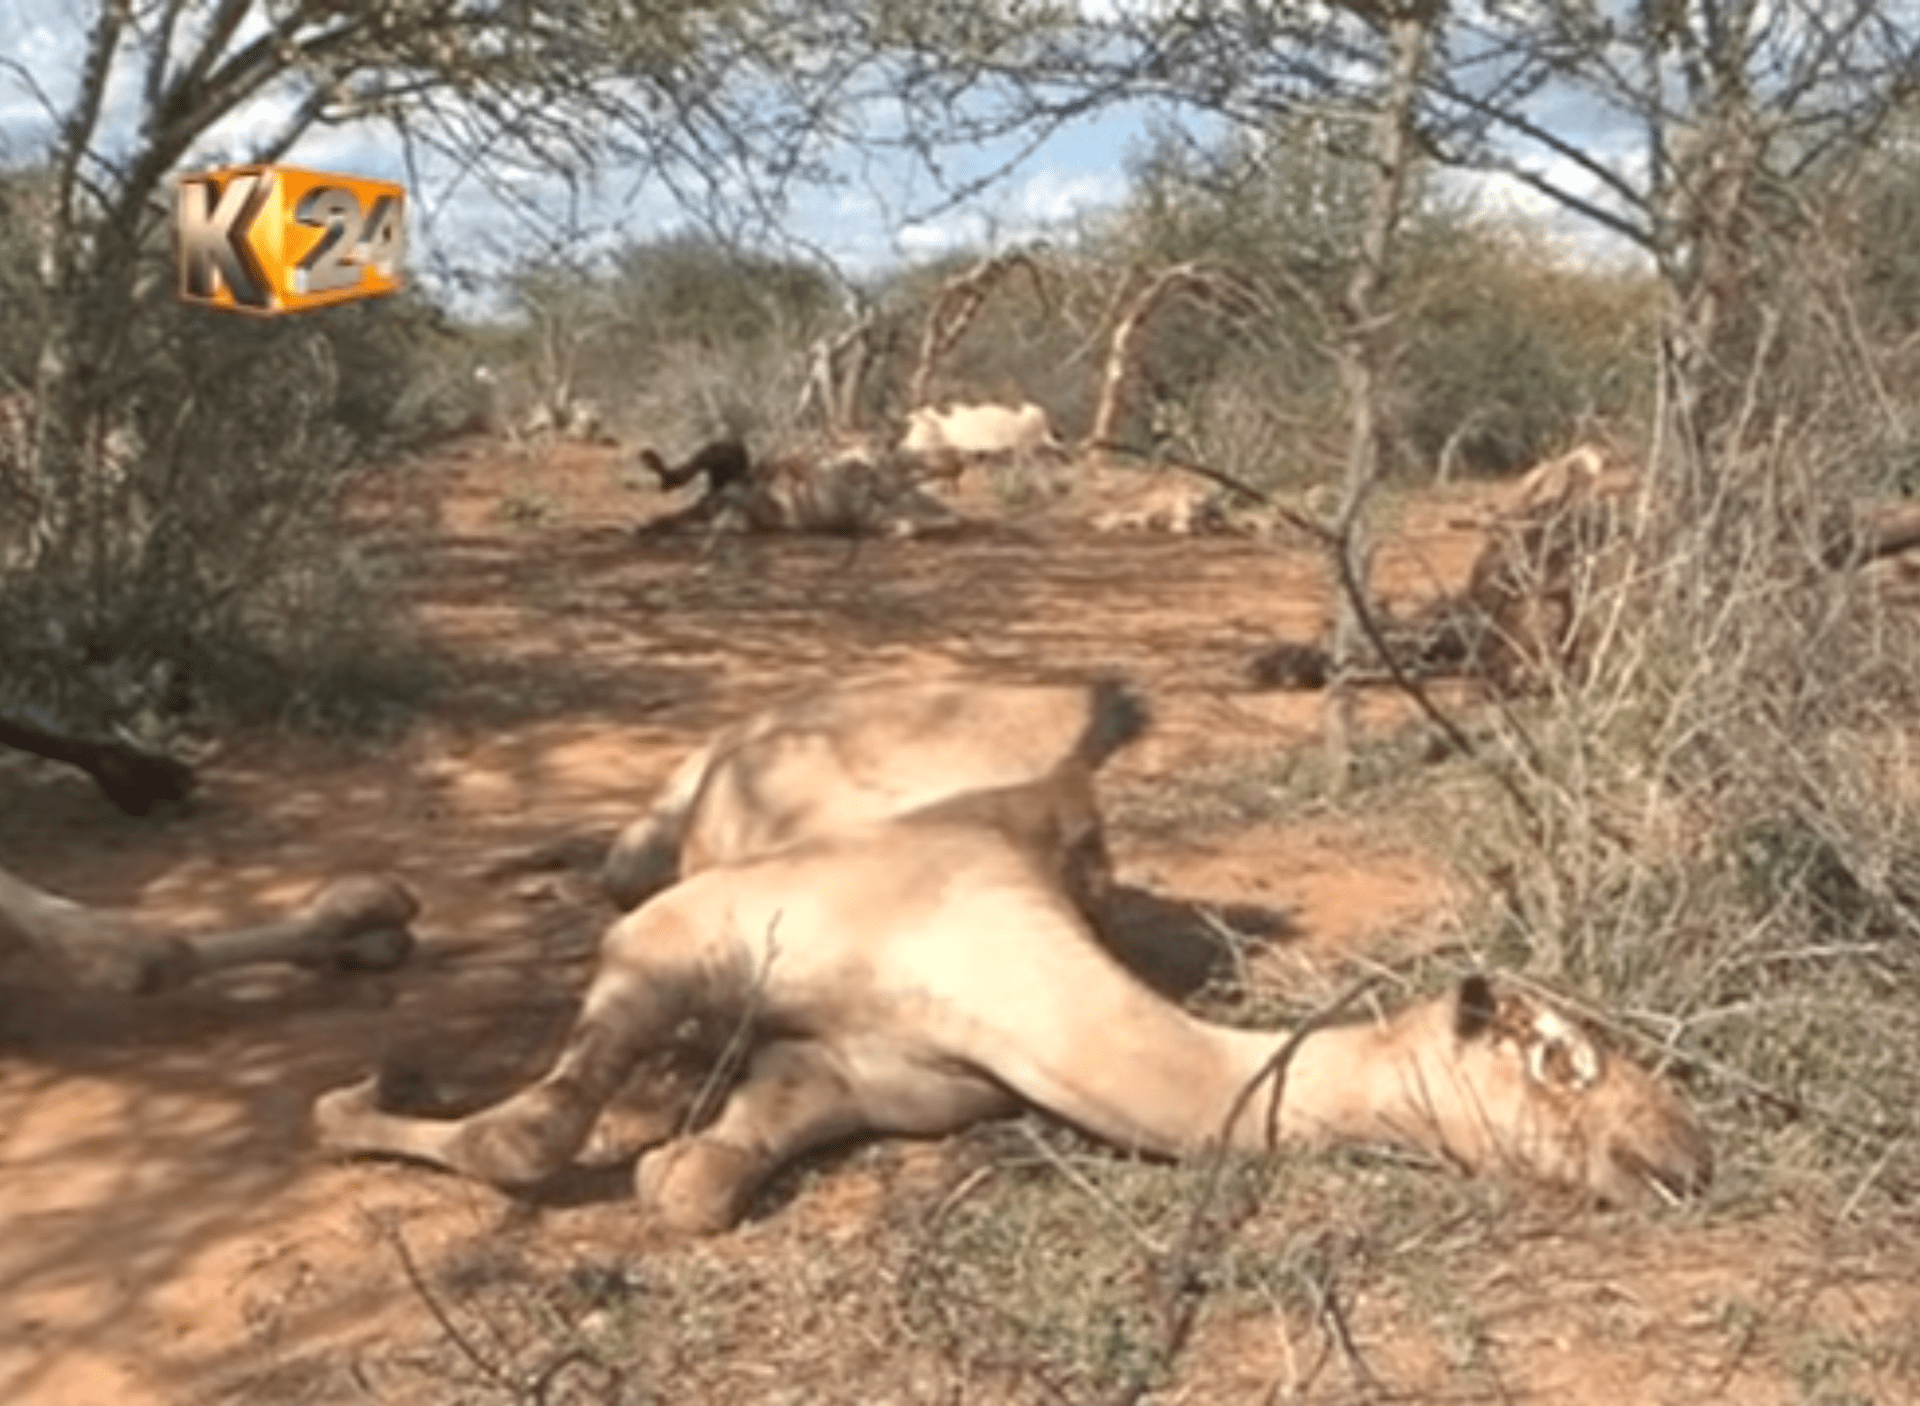 Policisté v Keni měli postřílet přes 100 velbloudů